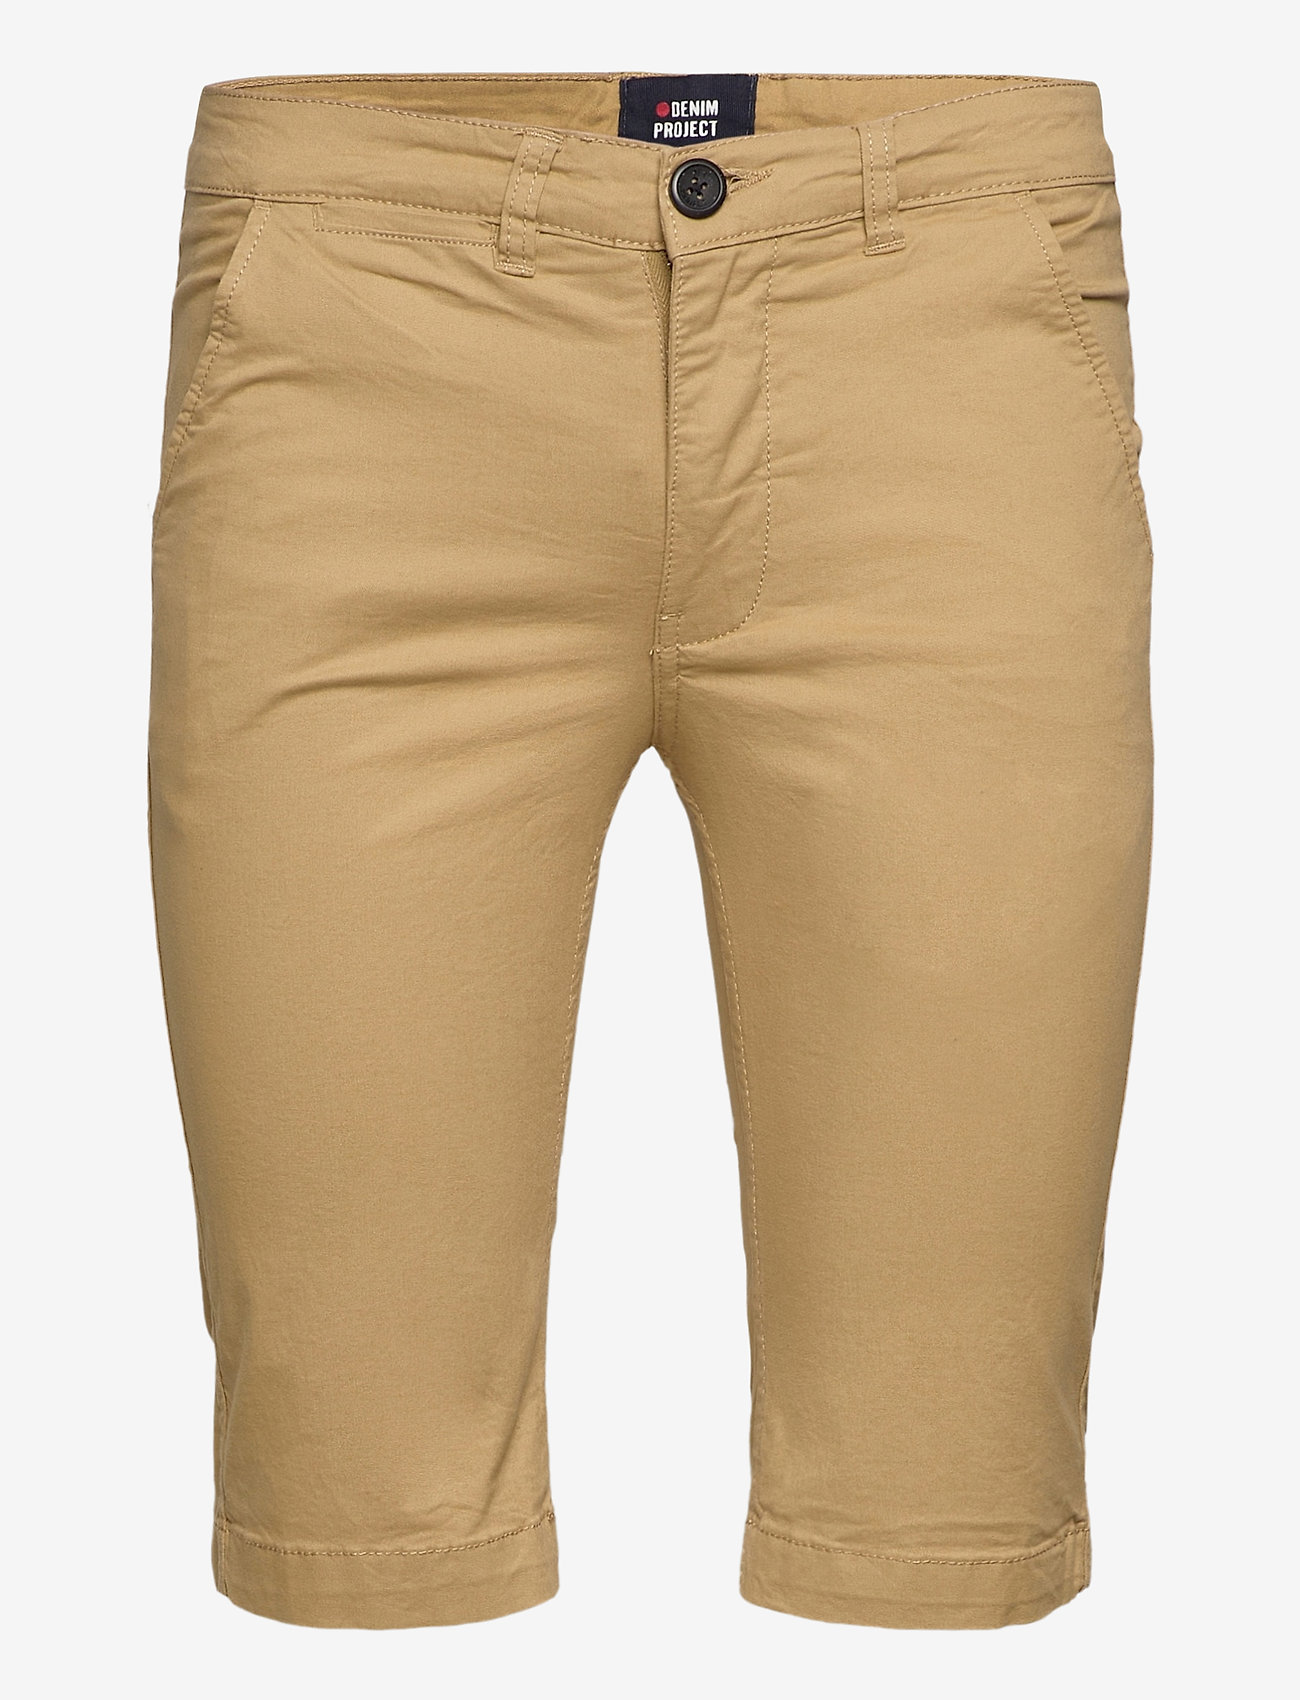 Denim project - DPKADIR SHORTS - chino shorts - kaki - 0